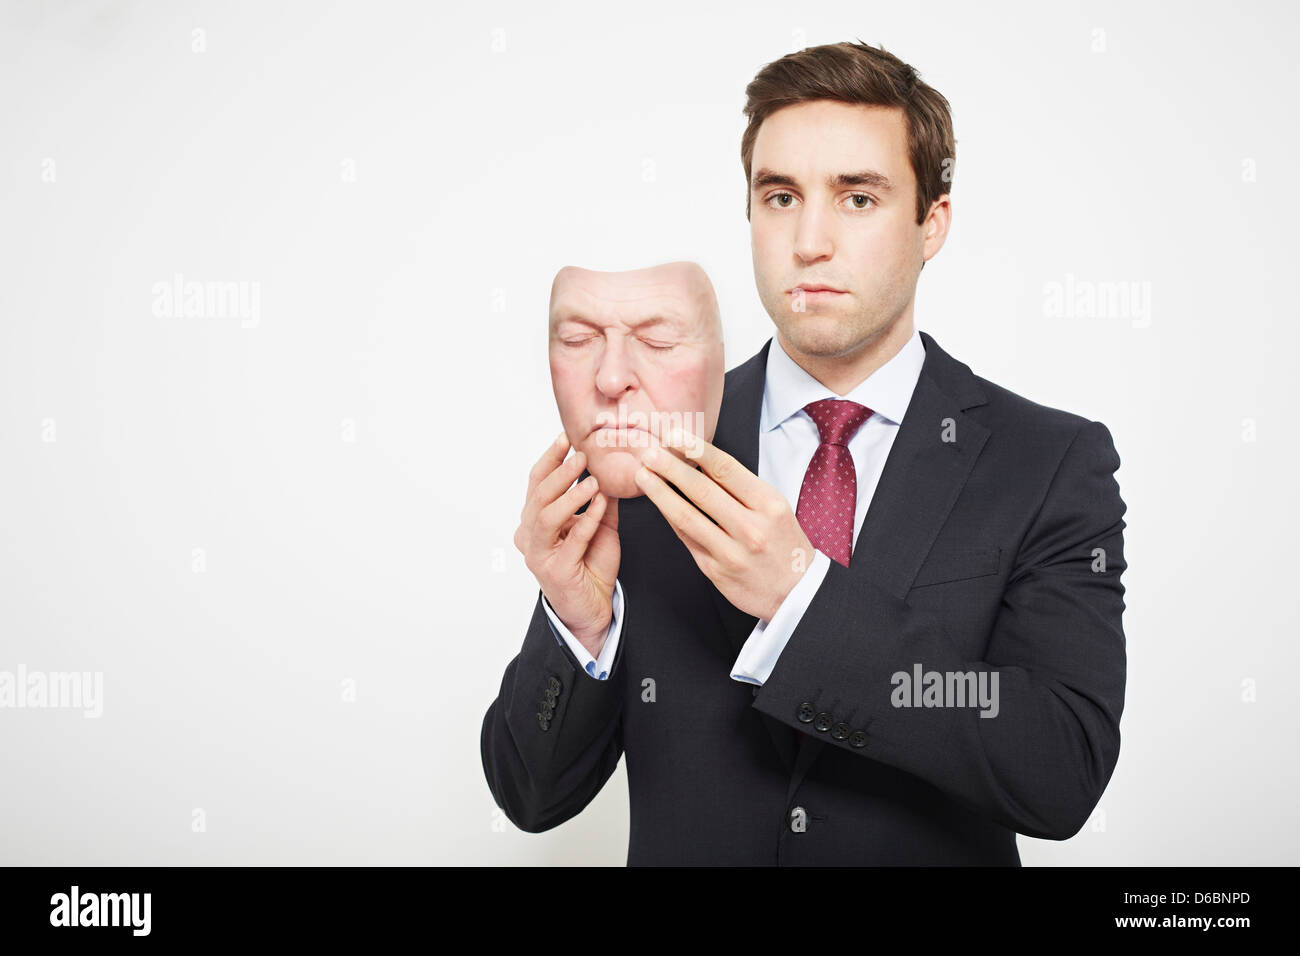 Businessman holding mask Stock Photo - Alamy